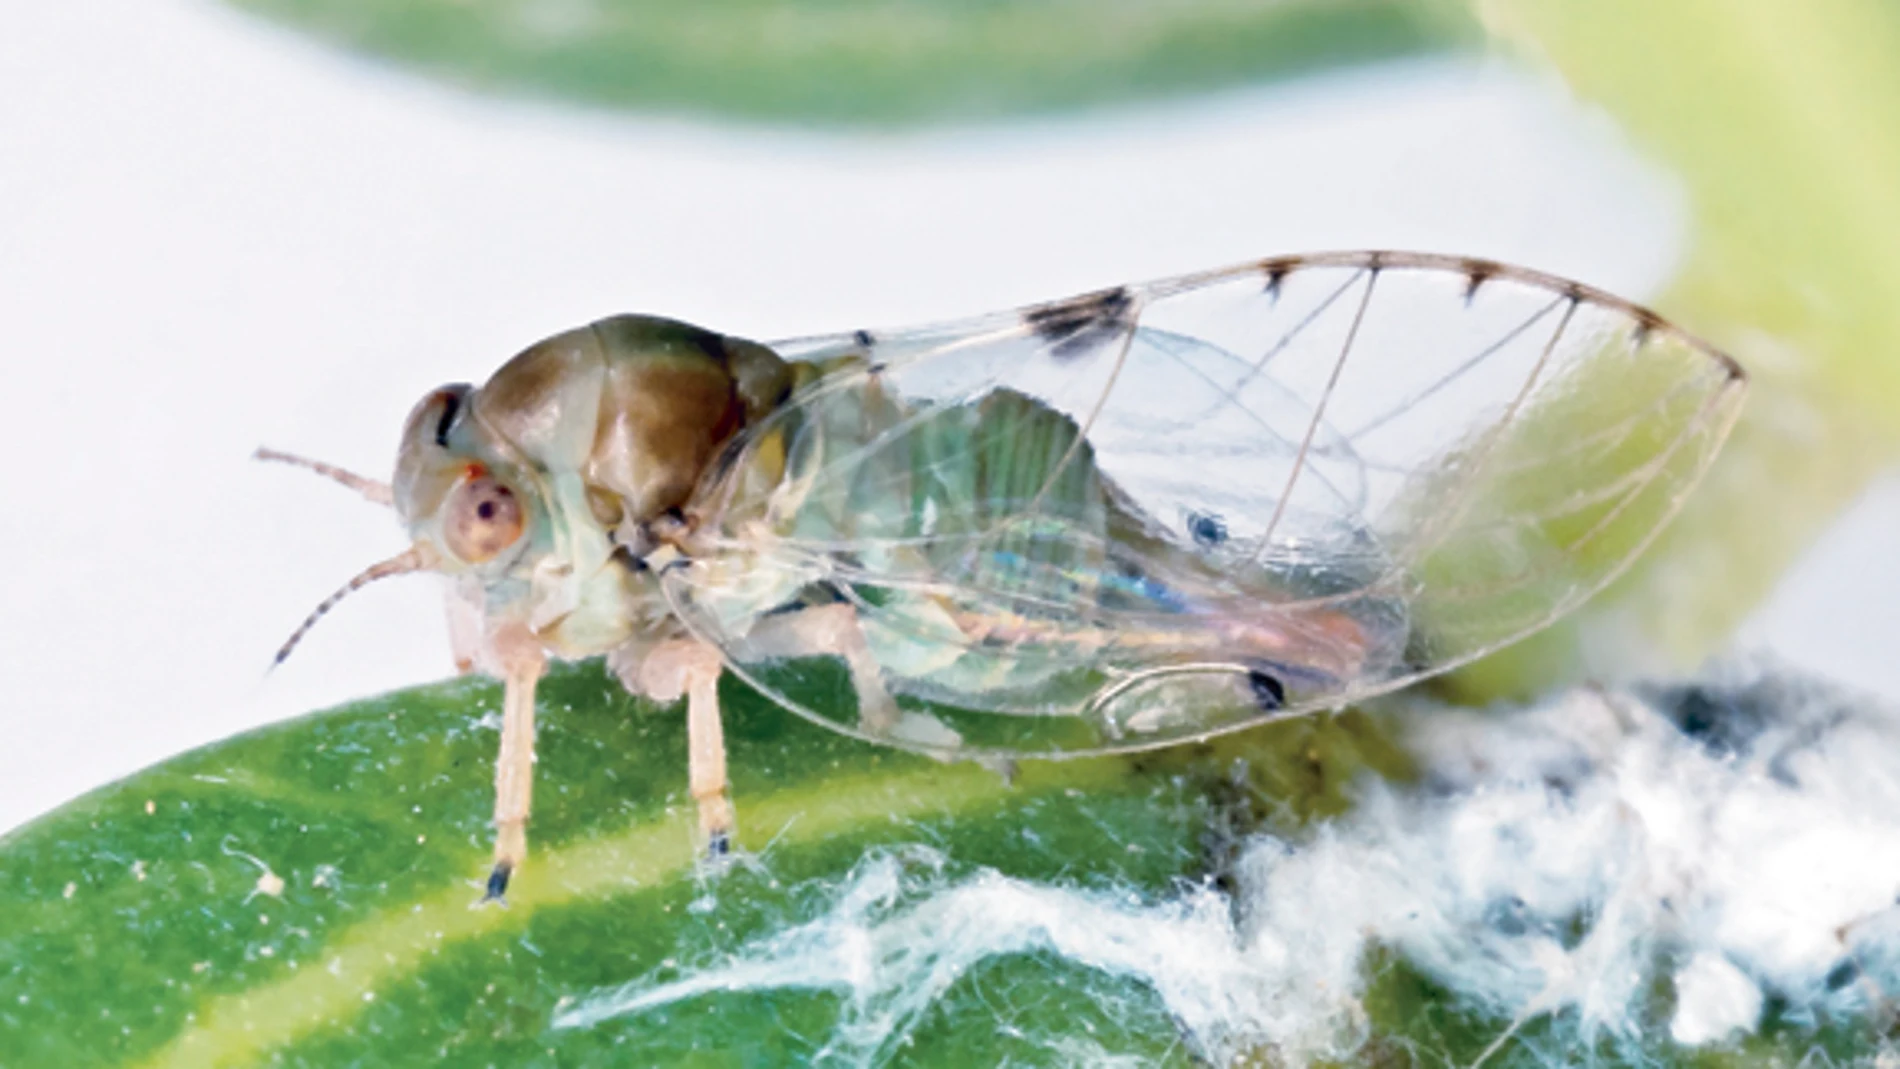 La plaga del ficus: Frenan a la «minicigarra» asiática sin utilizar insecticidas